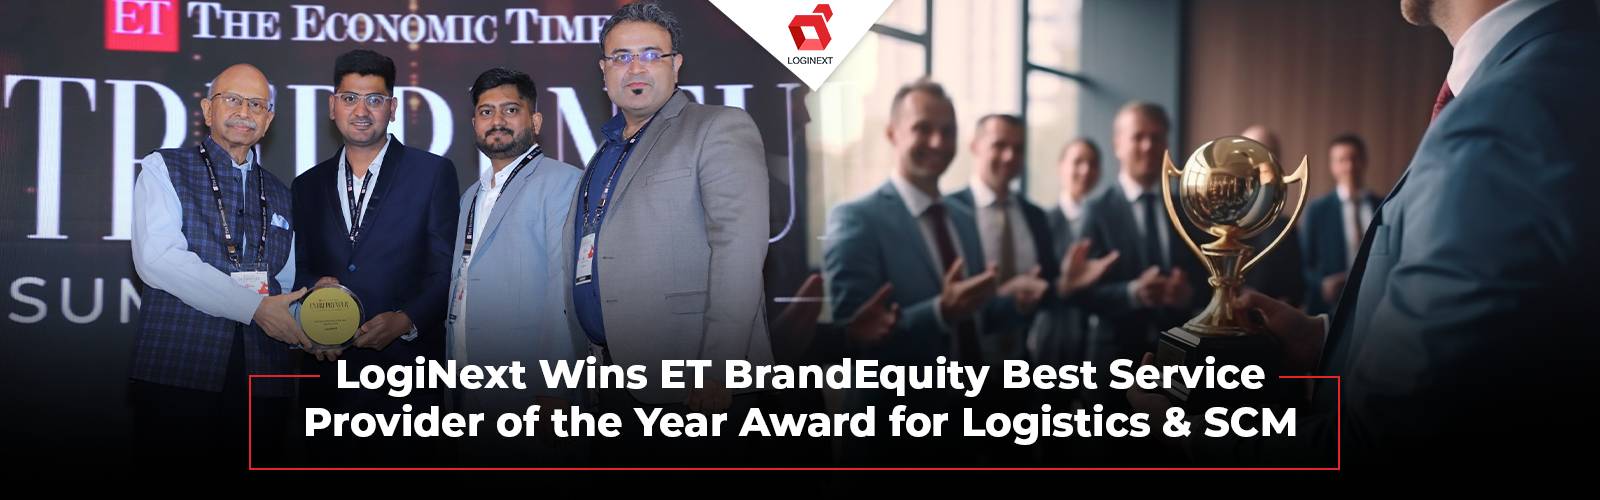 LogiNext gana el premio ET BrandEquity por servicios de logística y SCM